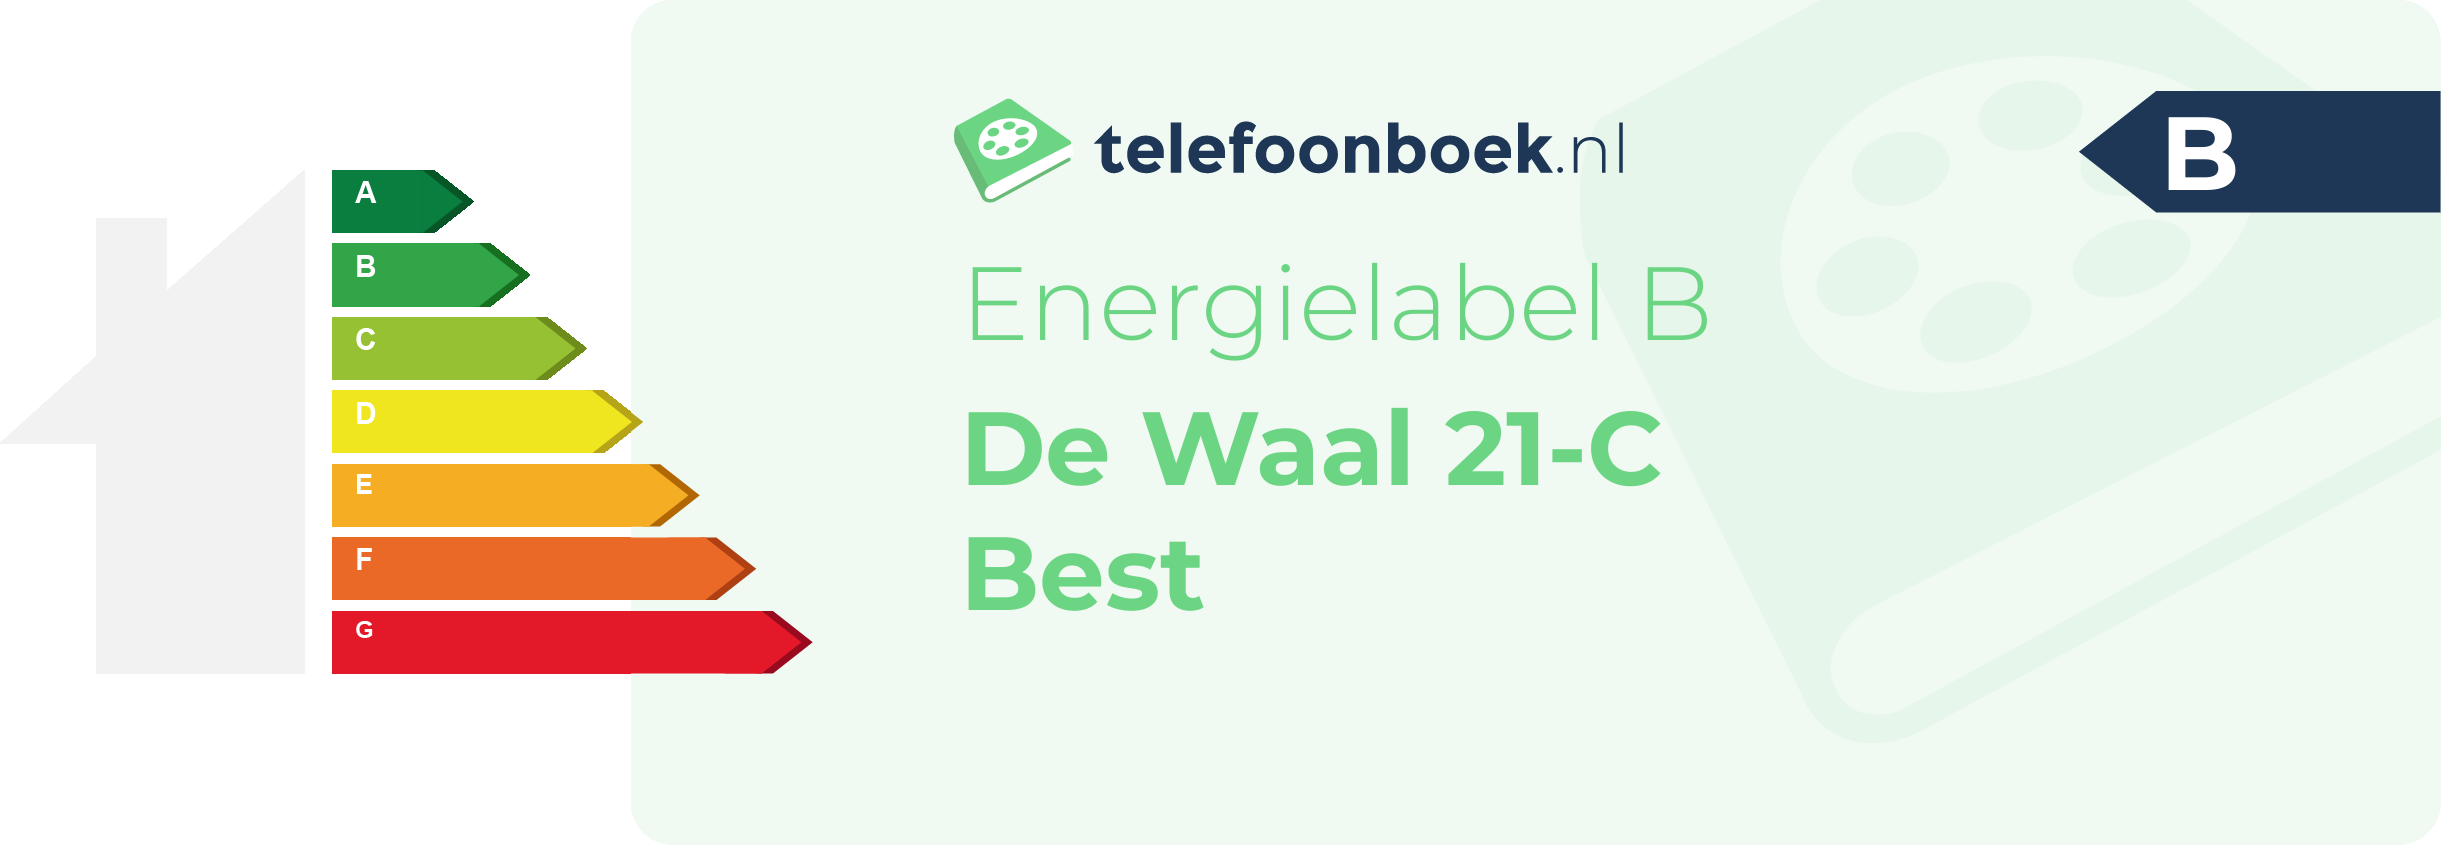 Energielabel De Waal 21-C Best